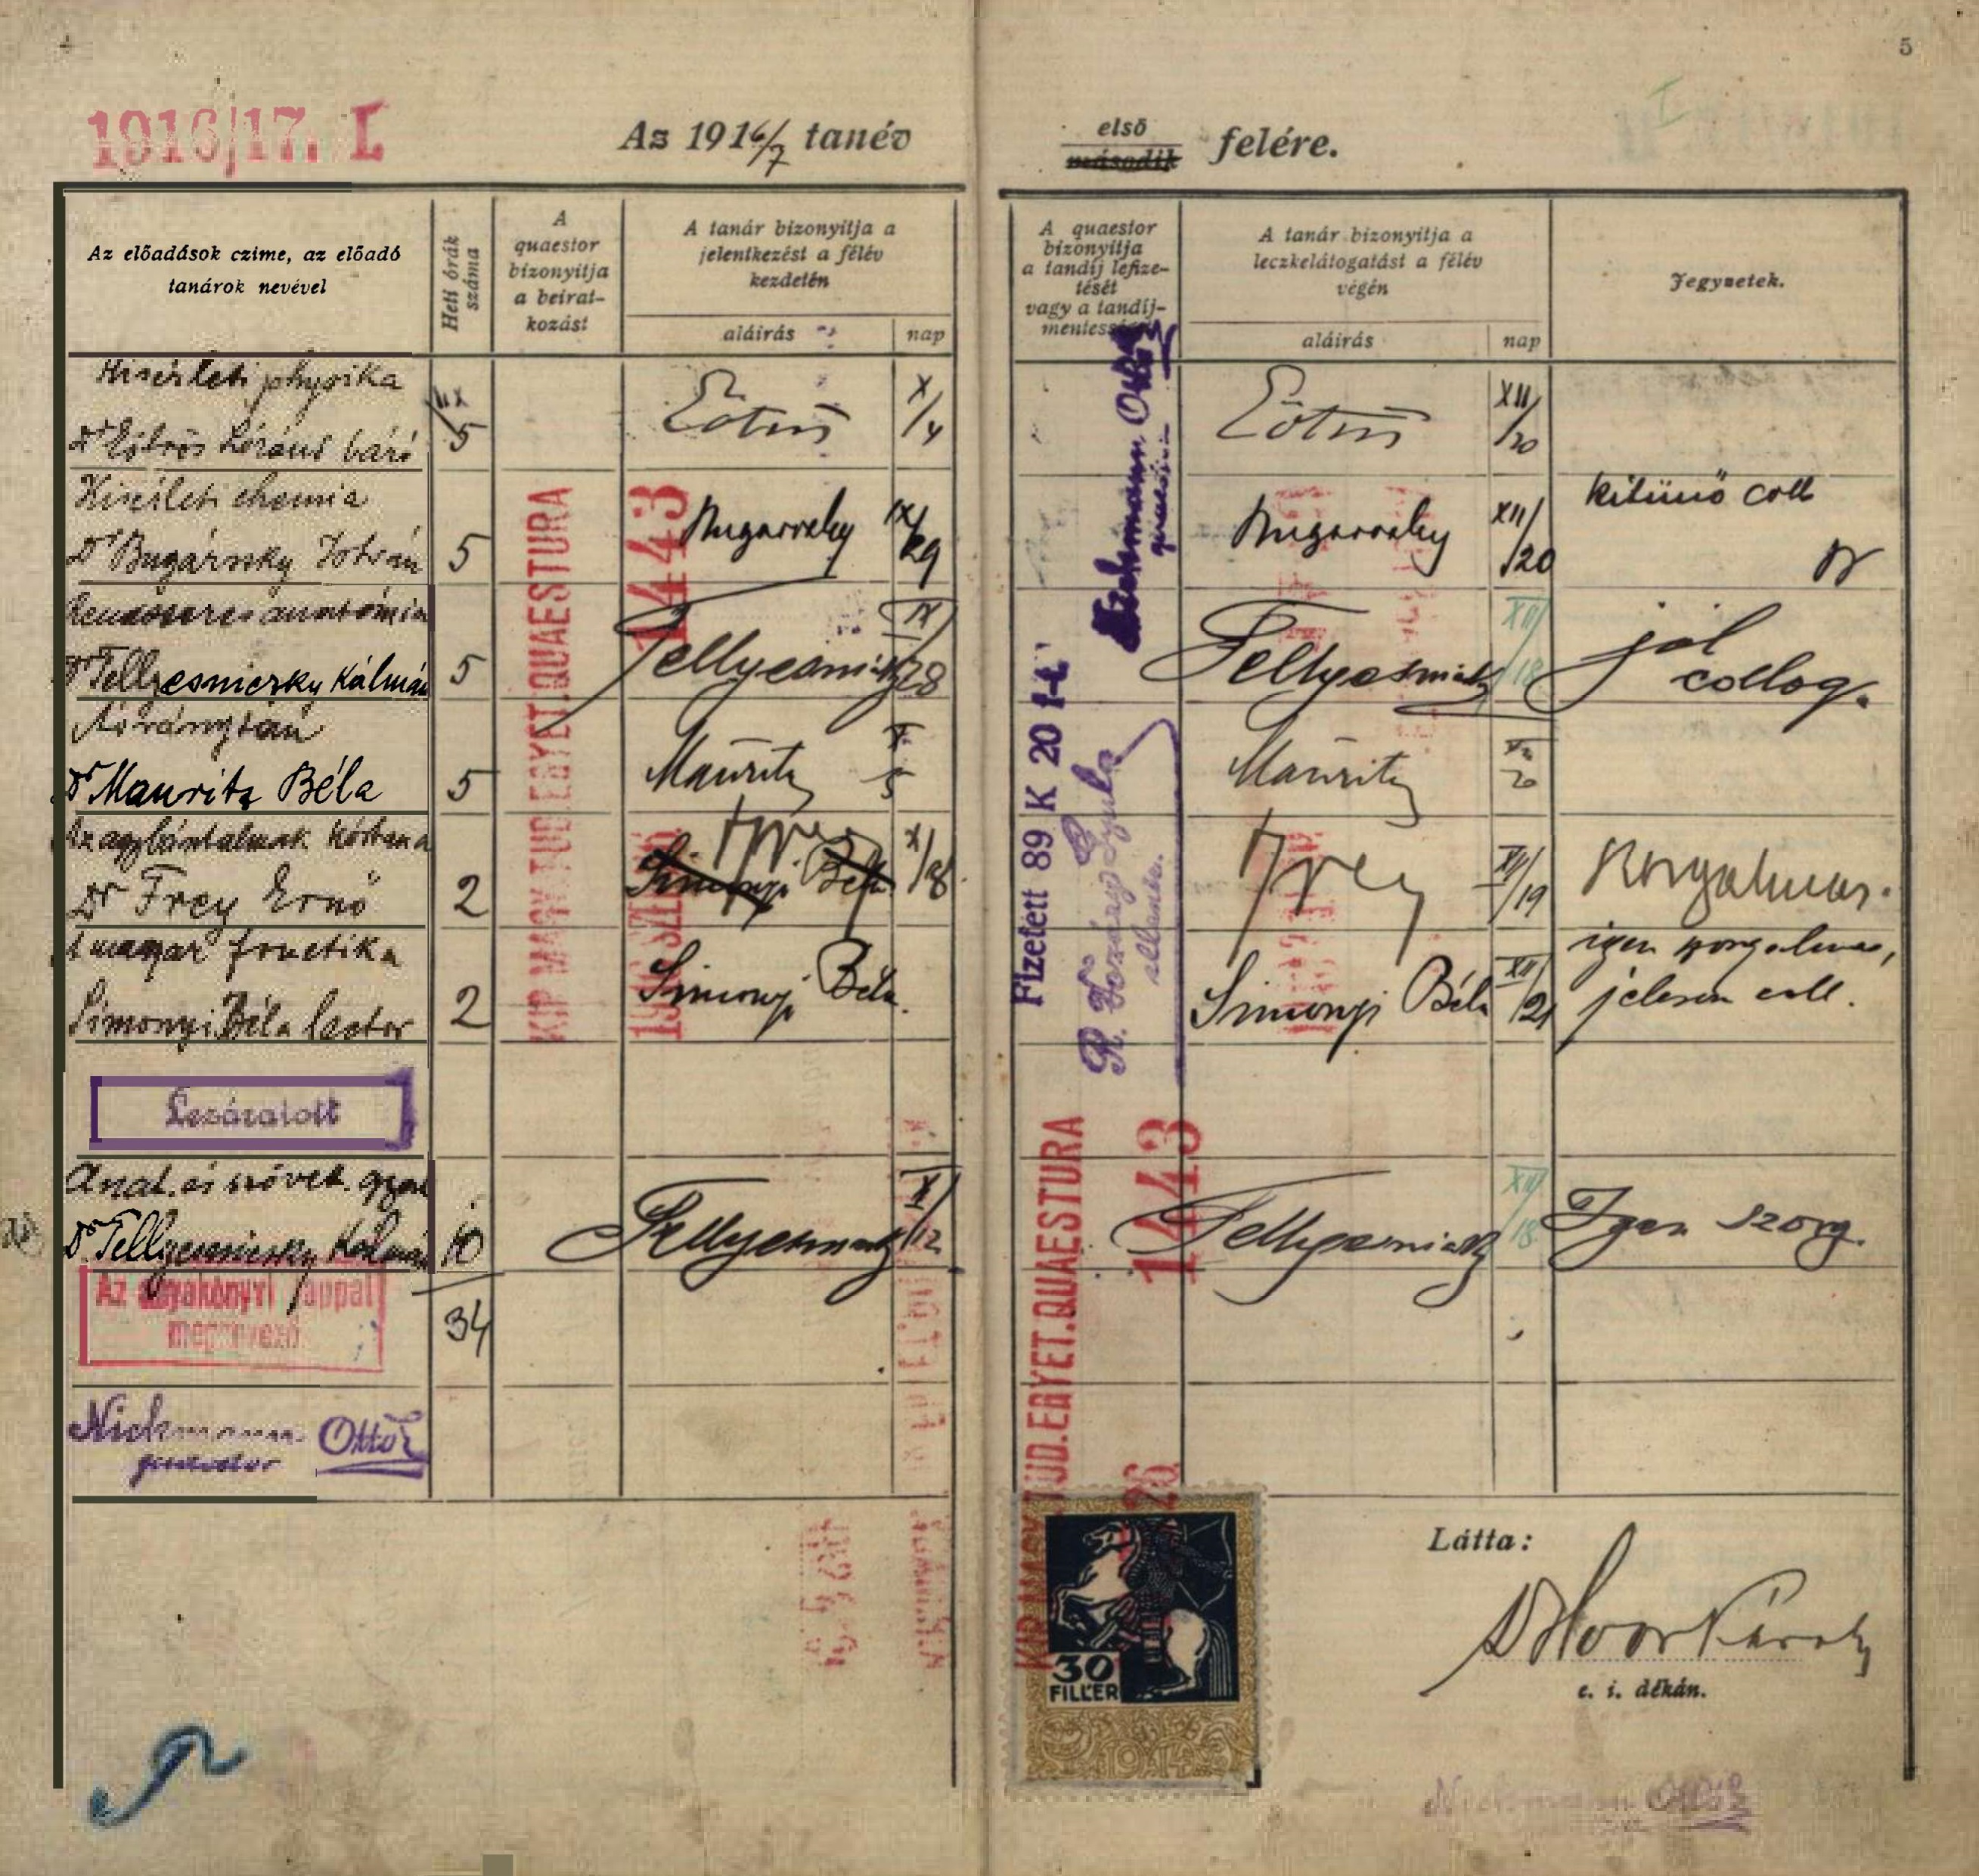 Bárczi Gusztáv orvostanhallgató leckekönyve, 1916/17. első félév